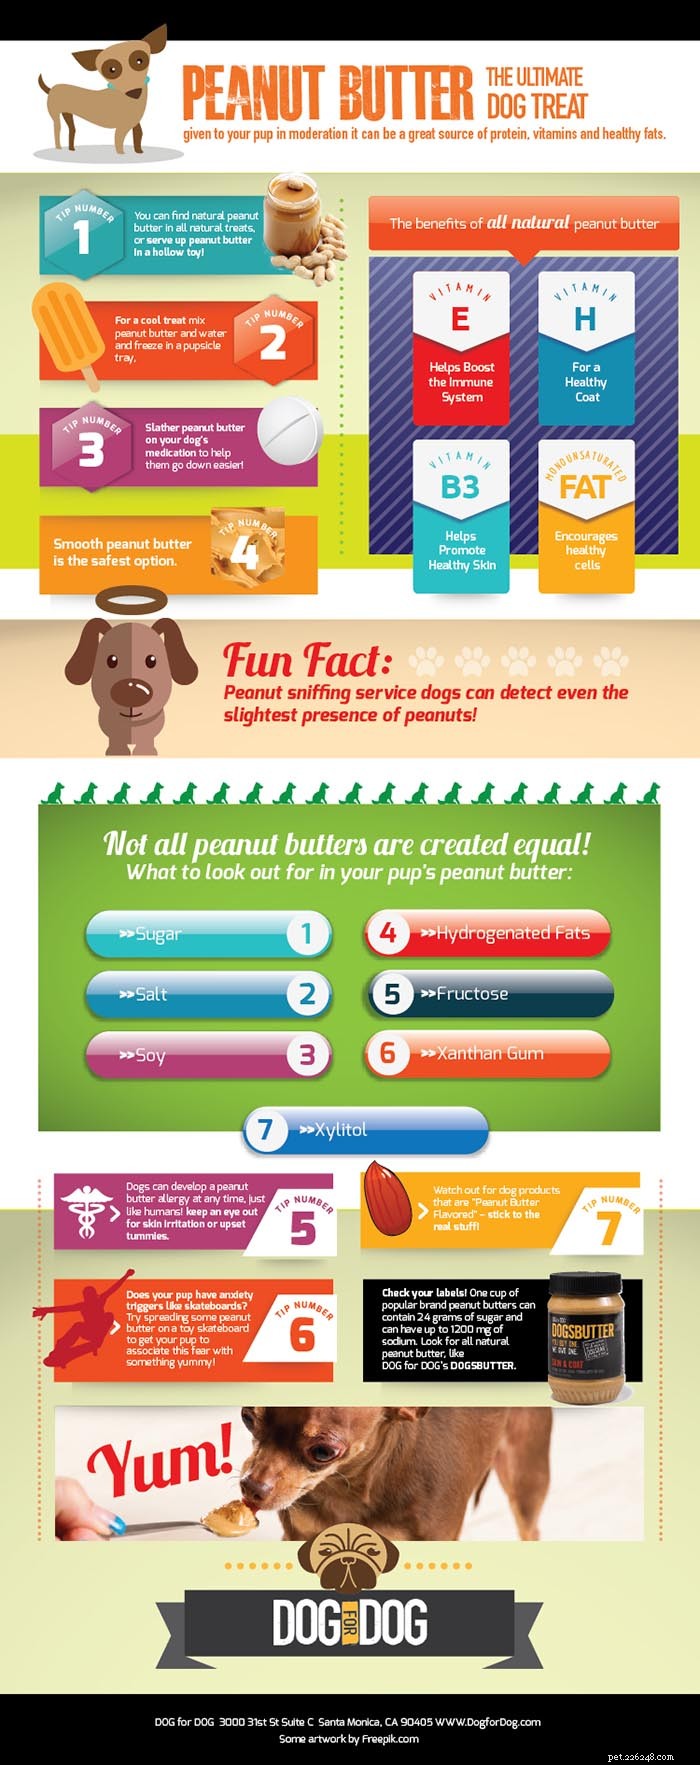 개가 땅콩 버터를 먹을 수 있습니까?